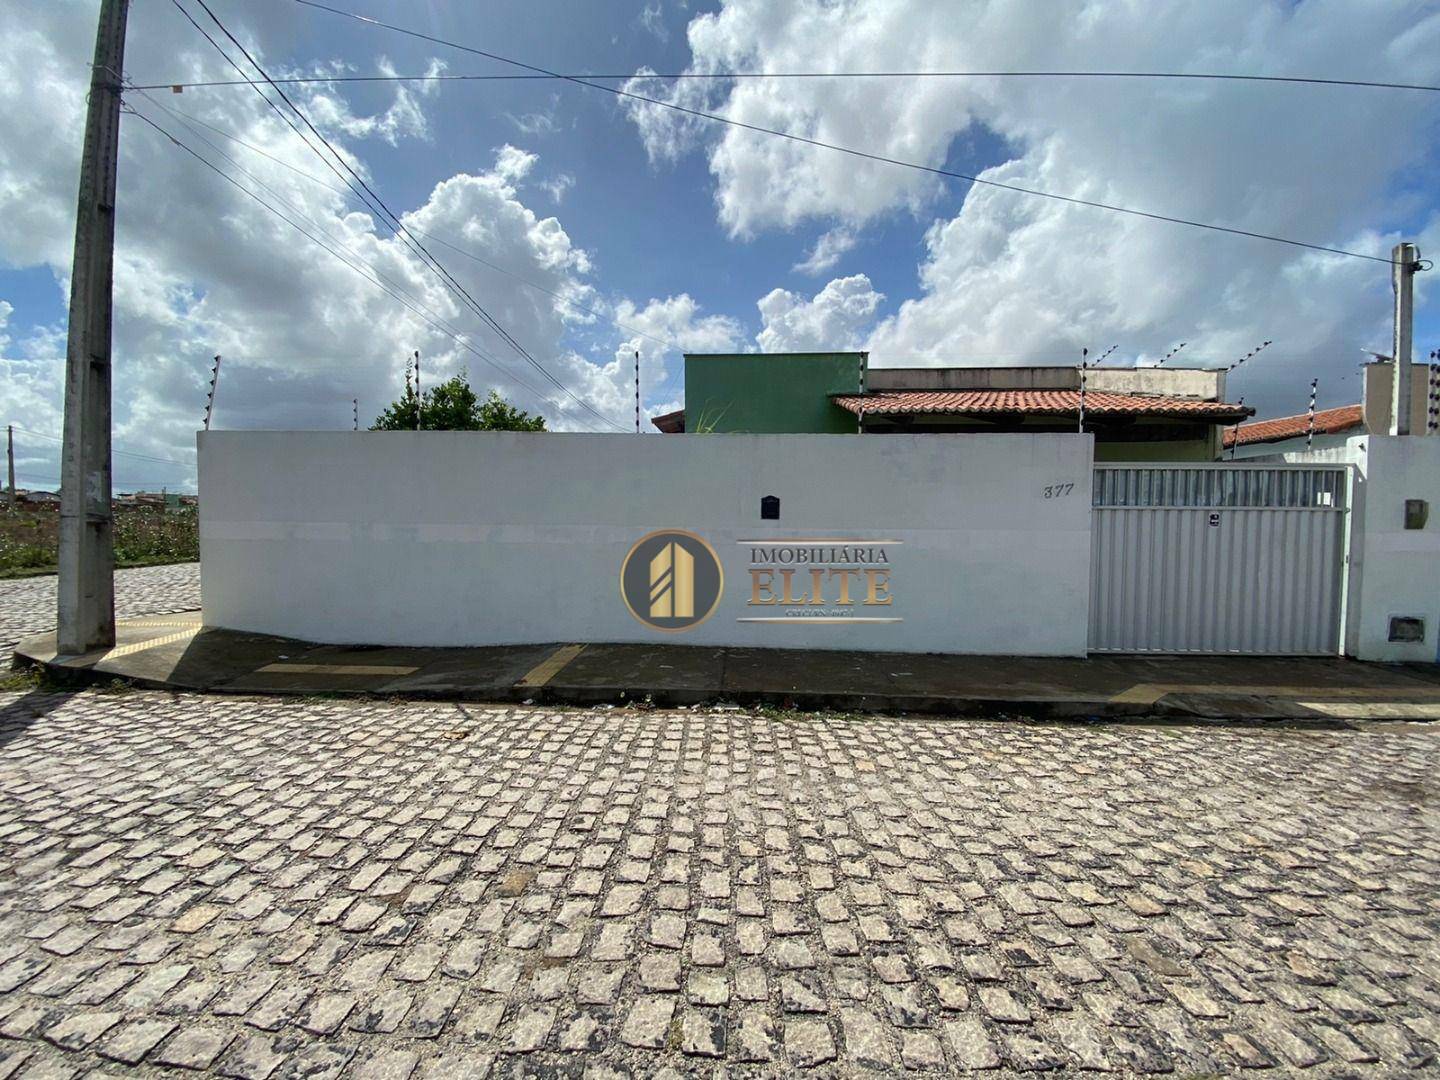 Casa com 3 dormitórios para alugar, 75 m² por R$ 600,00/mês - Bela Macaiba - Macaíba/RN